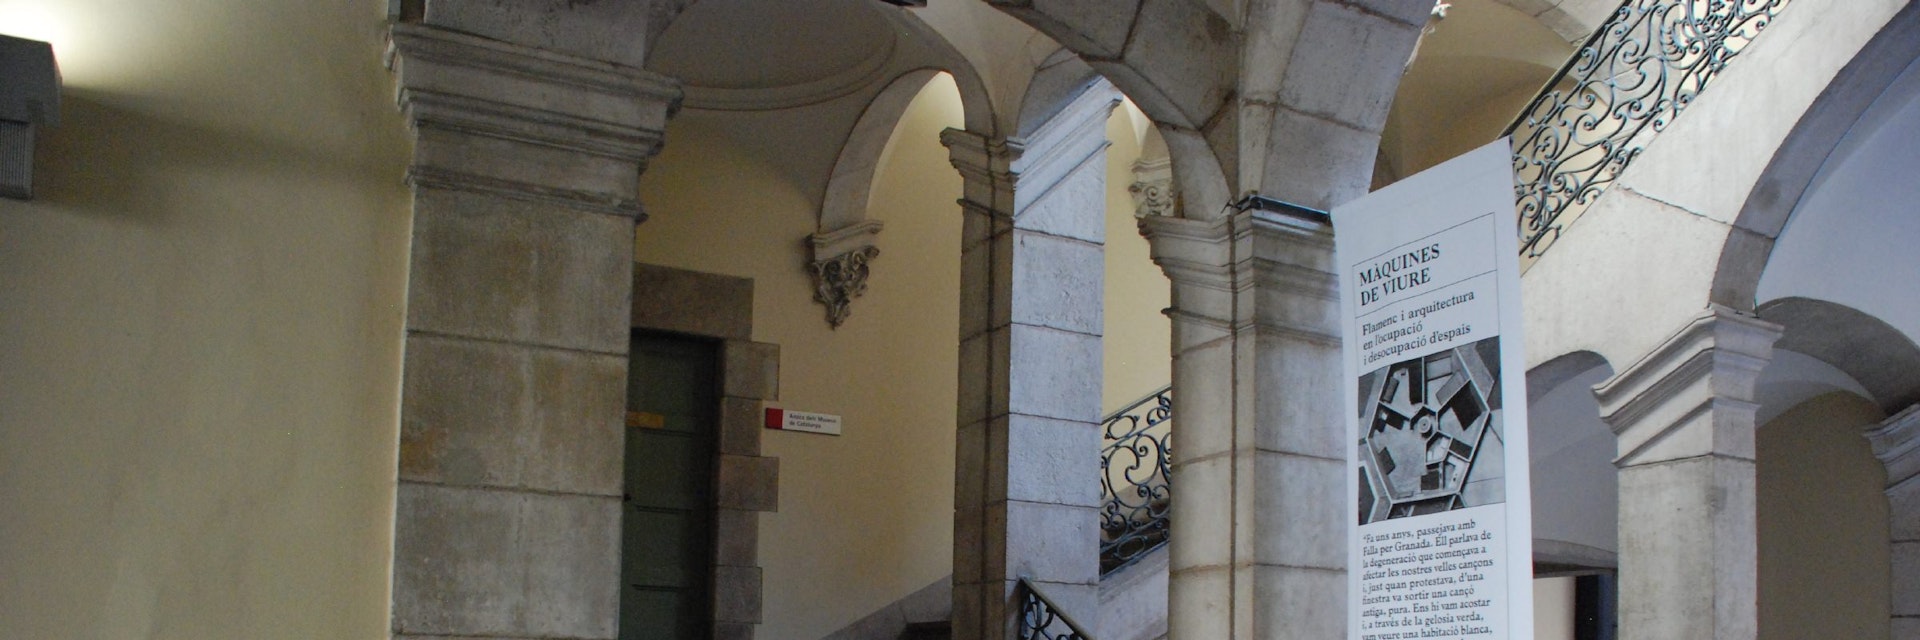 Entrance to Centre de la Imatge